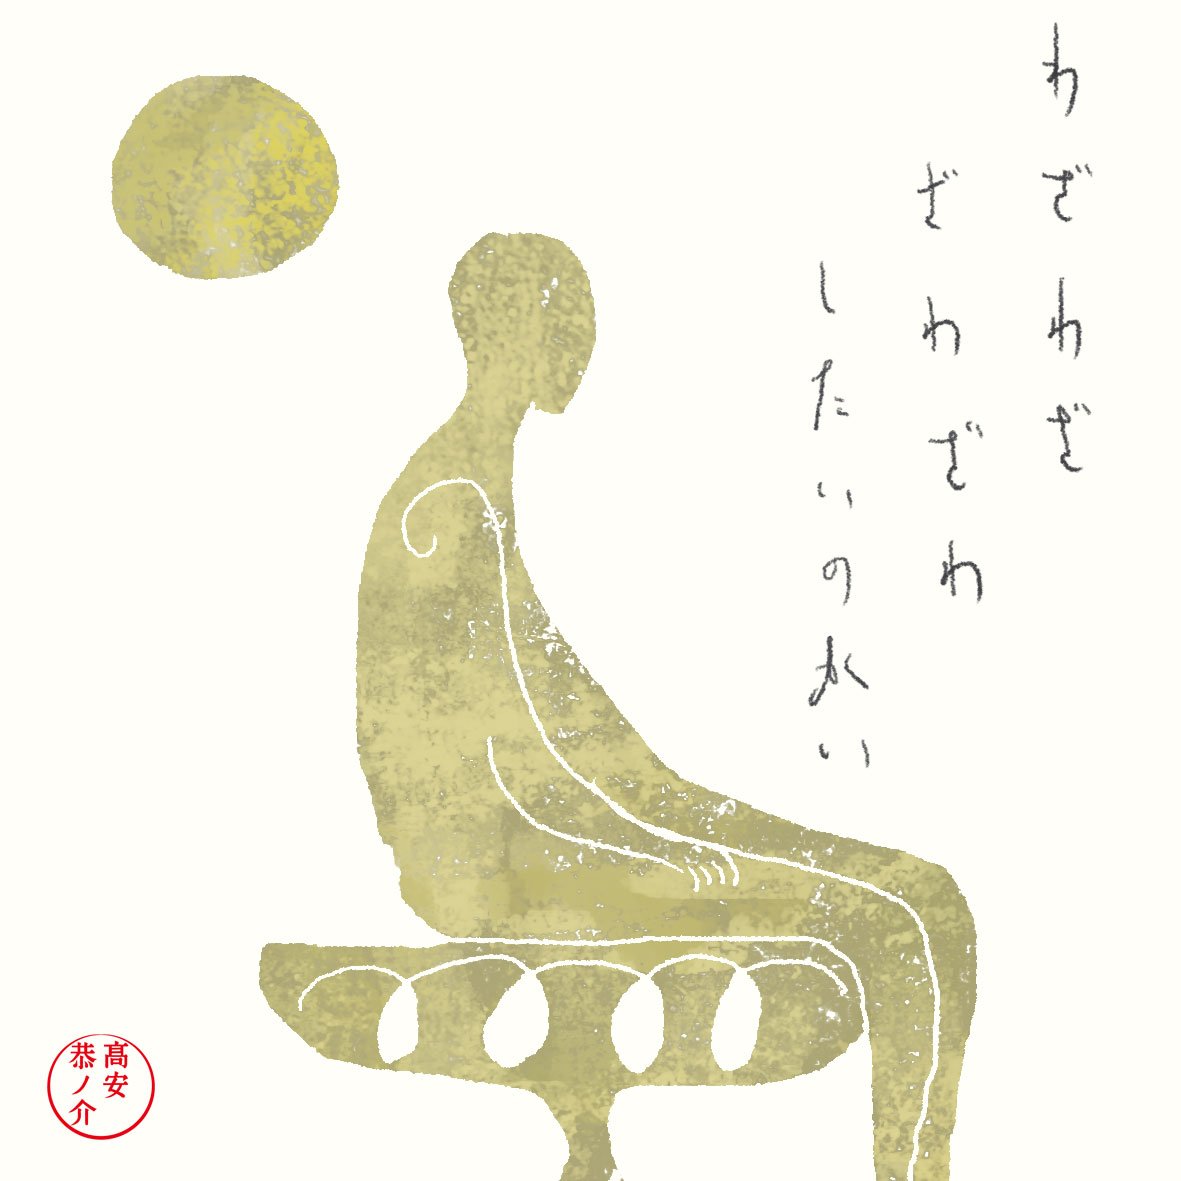 まかない(2019.8.22)
You don't have to disturb the feeling personally.

#illustration #きょうのまかない 